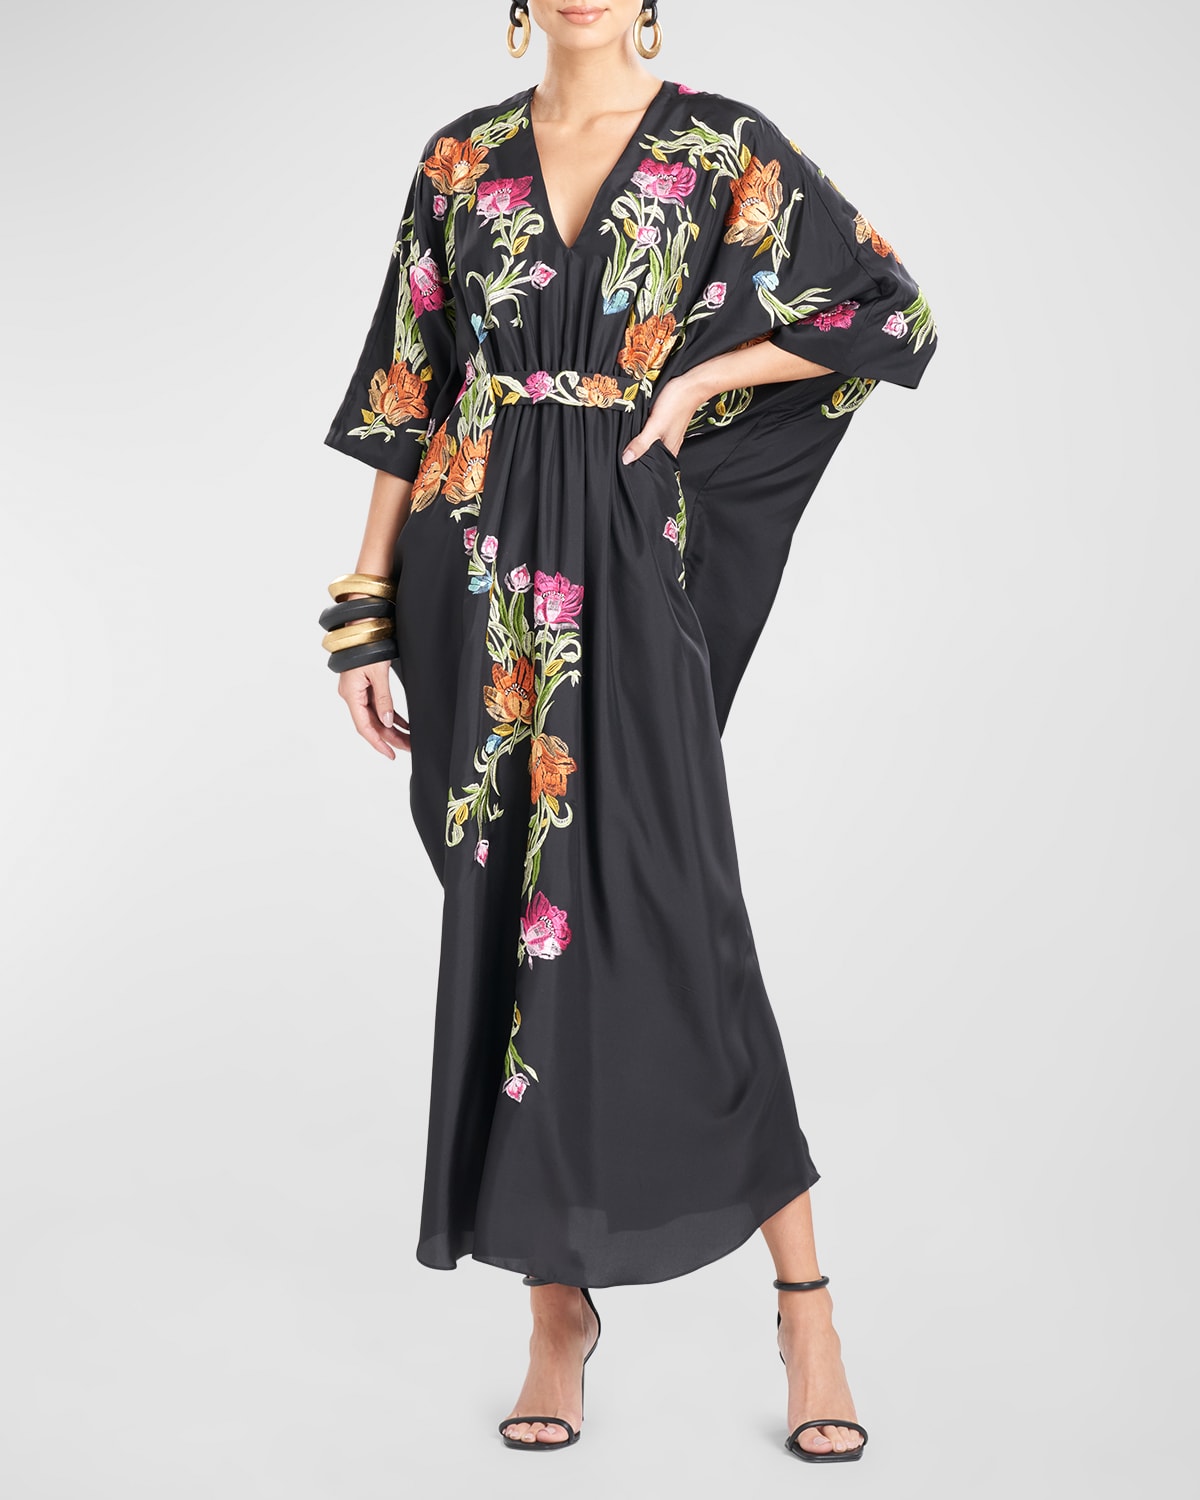 Josie Natori Shinjo Couture Floral-Embroidered Silk Caftan